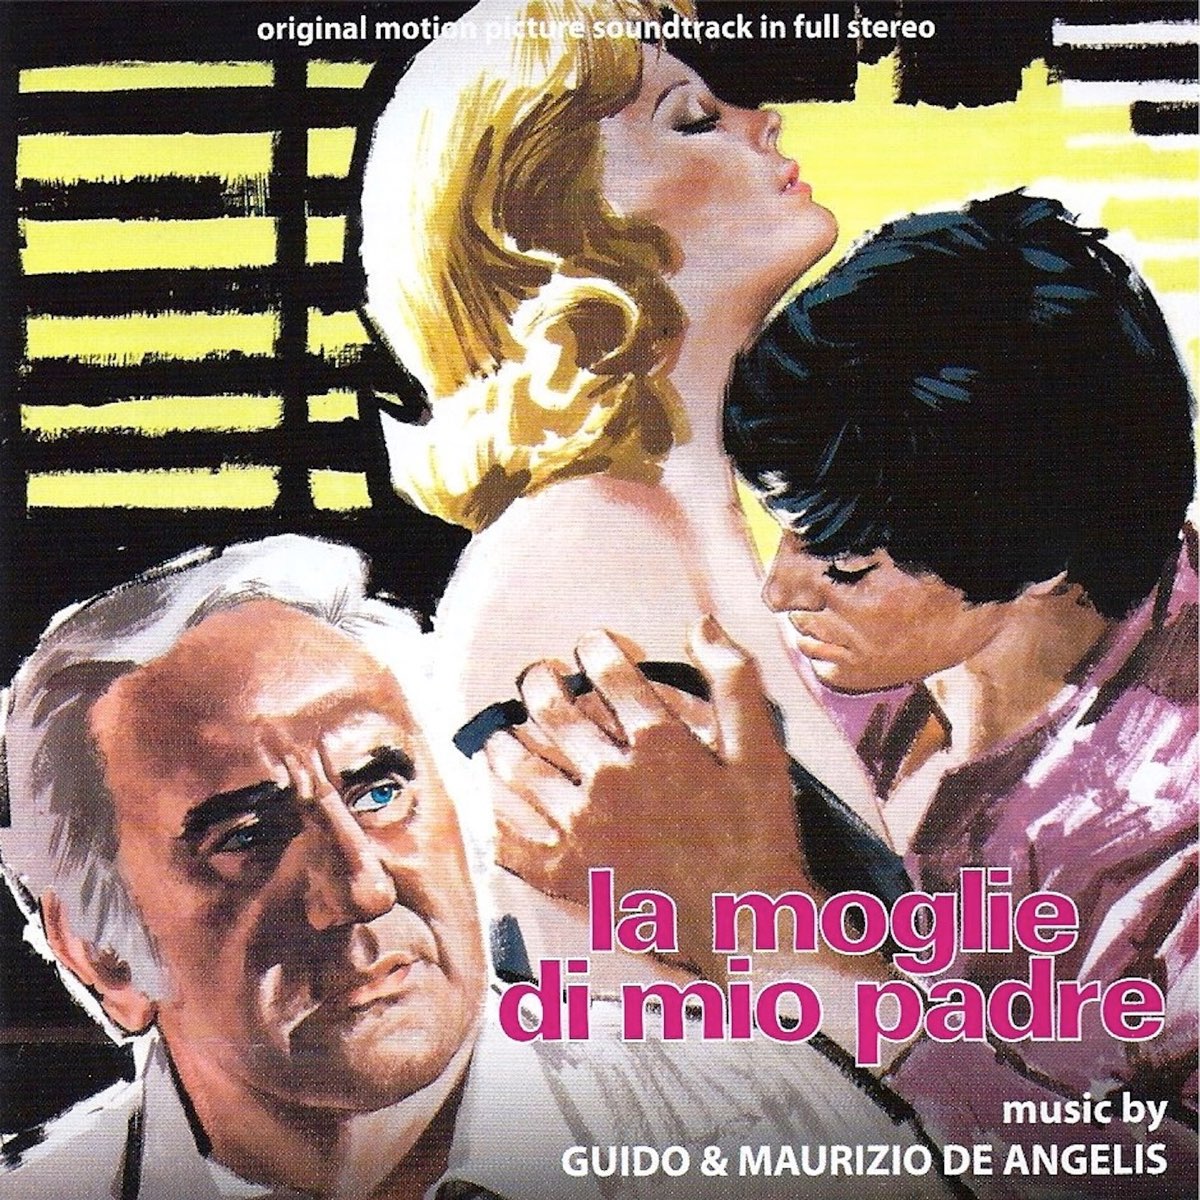 La moglie di mio padre (original motion picture soundtrack) - Album di  Guido & Maurizio De Angelis - Apple Music